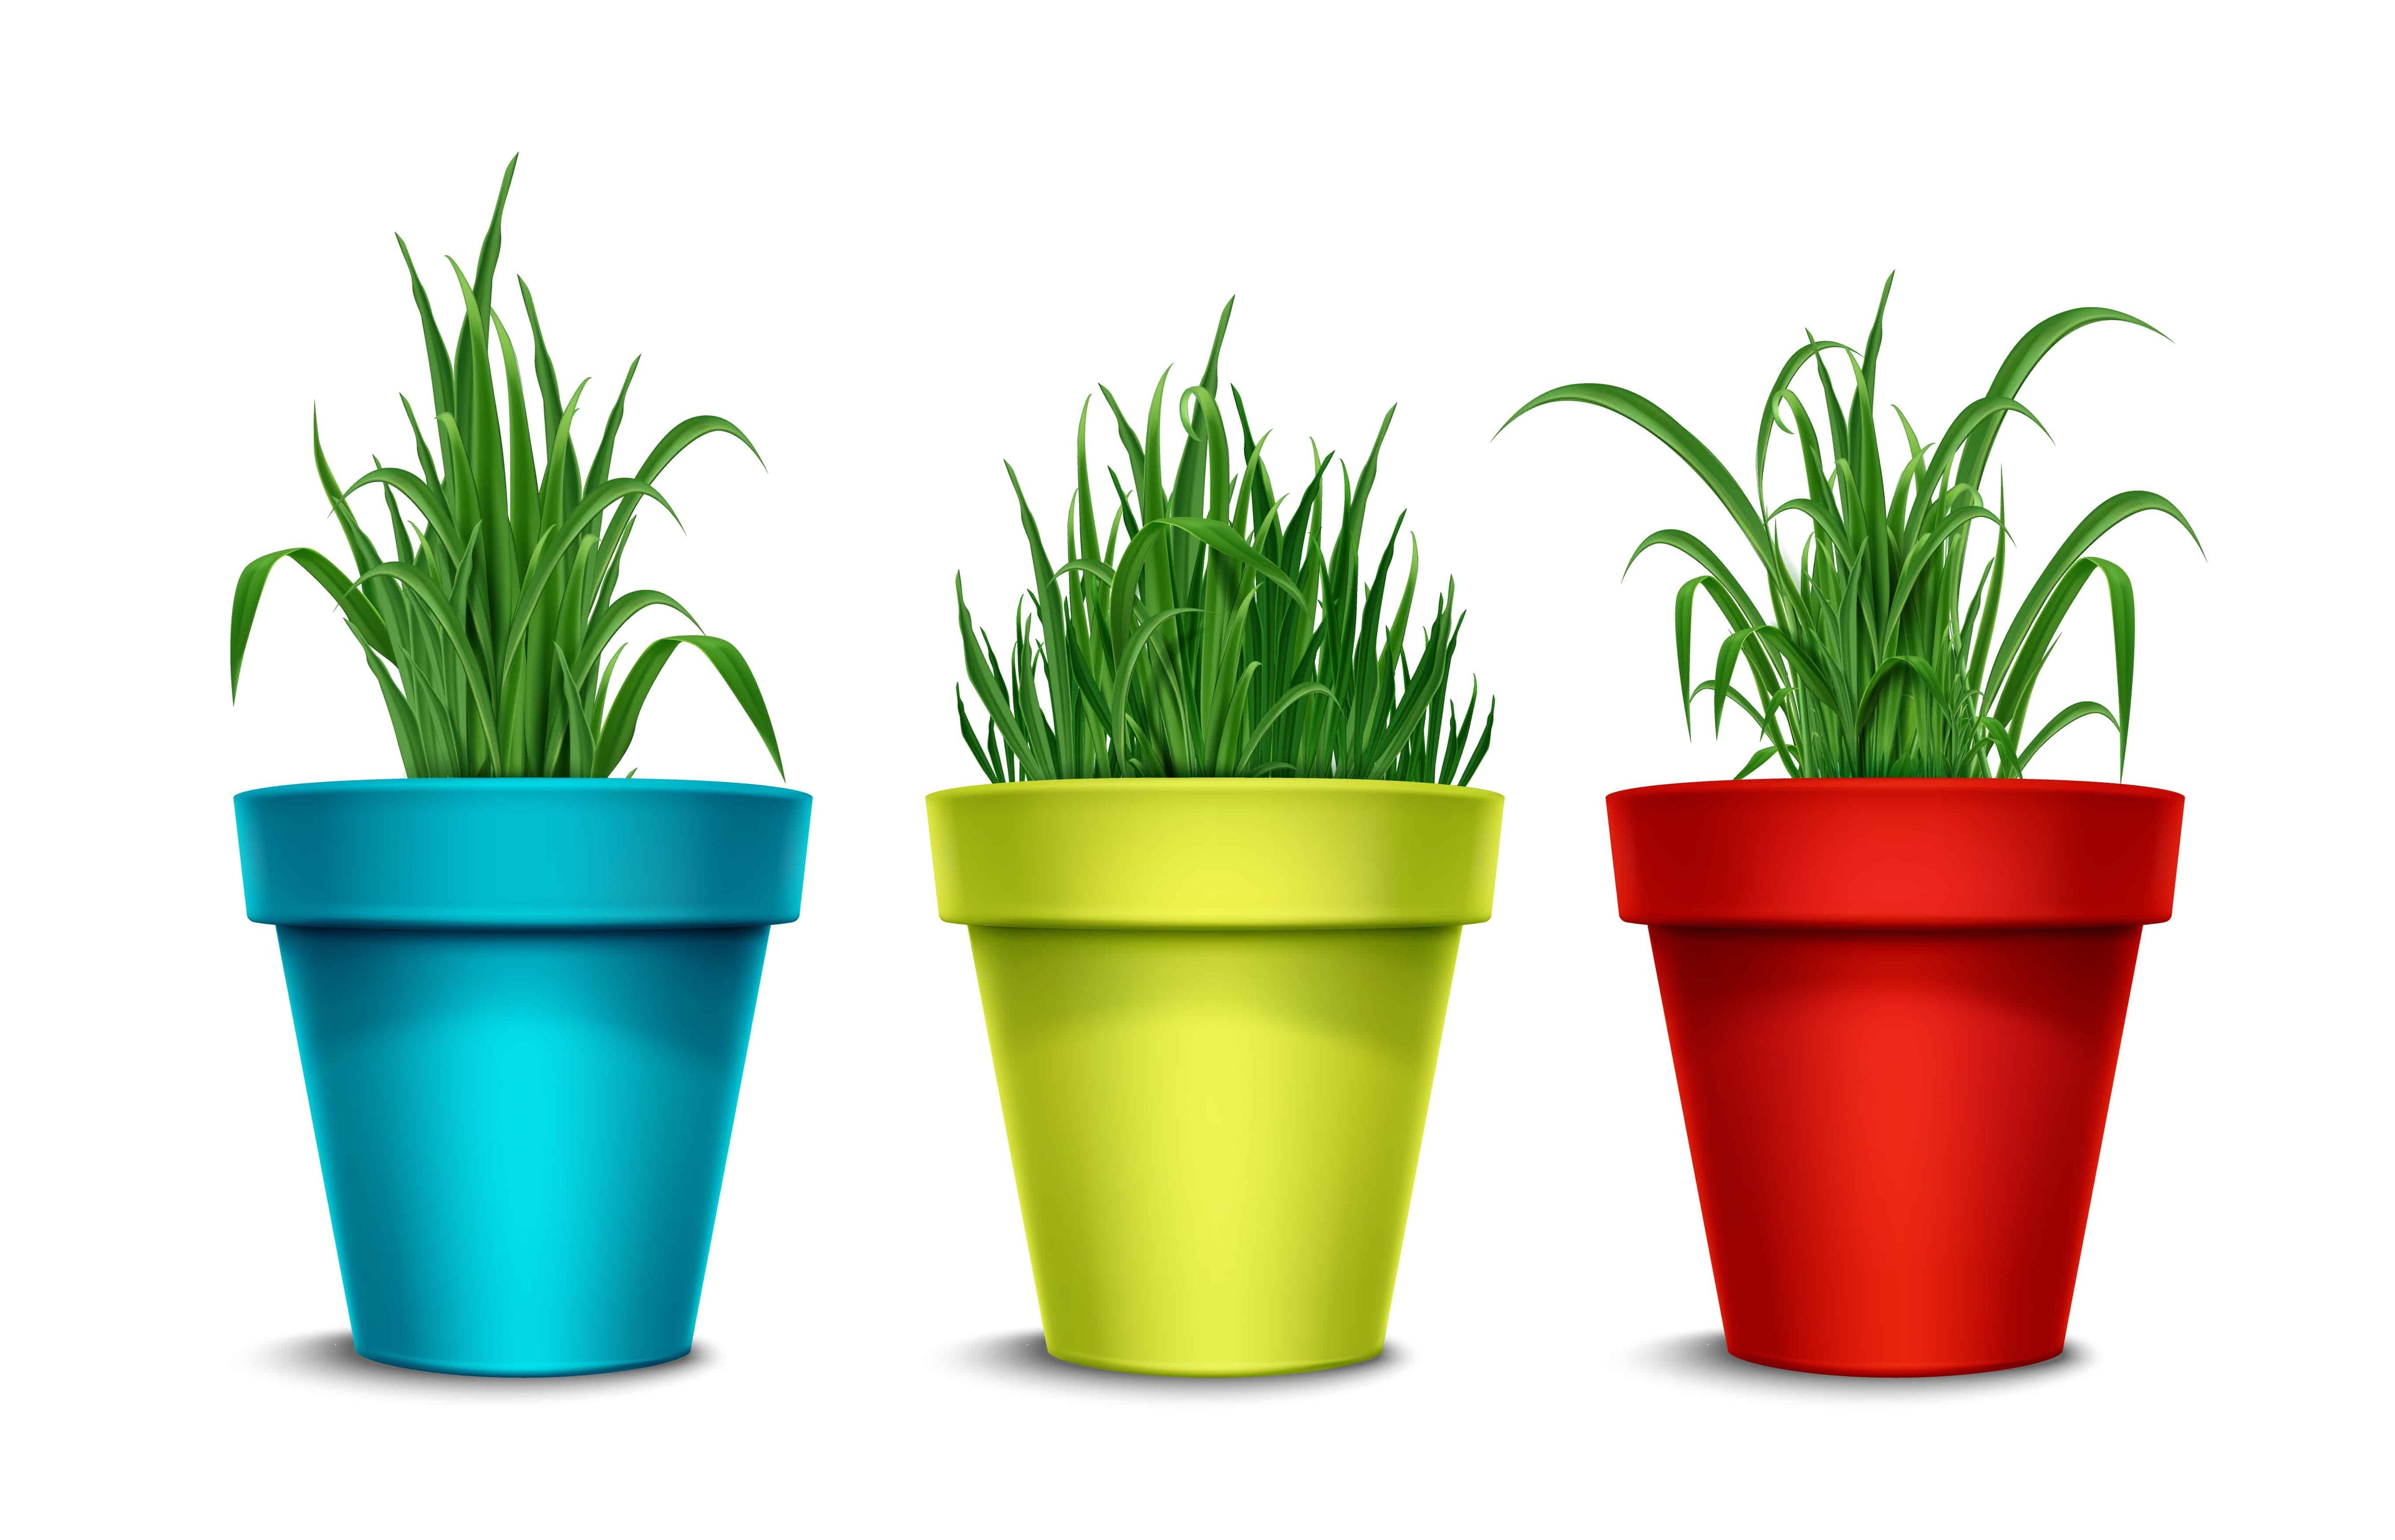 Plant Pots & Planters Online | Buy Fiber Garden pots